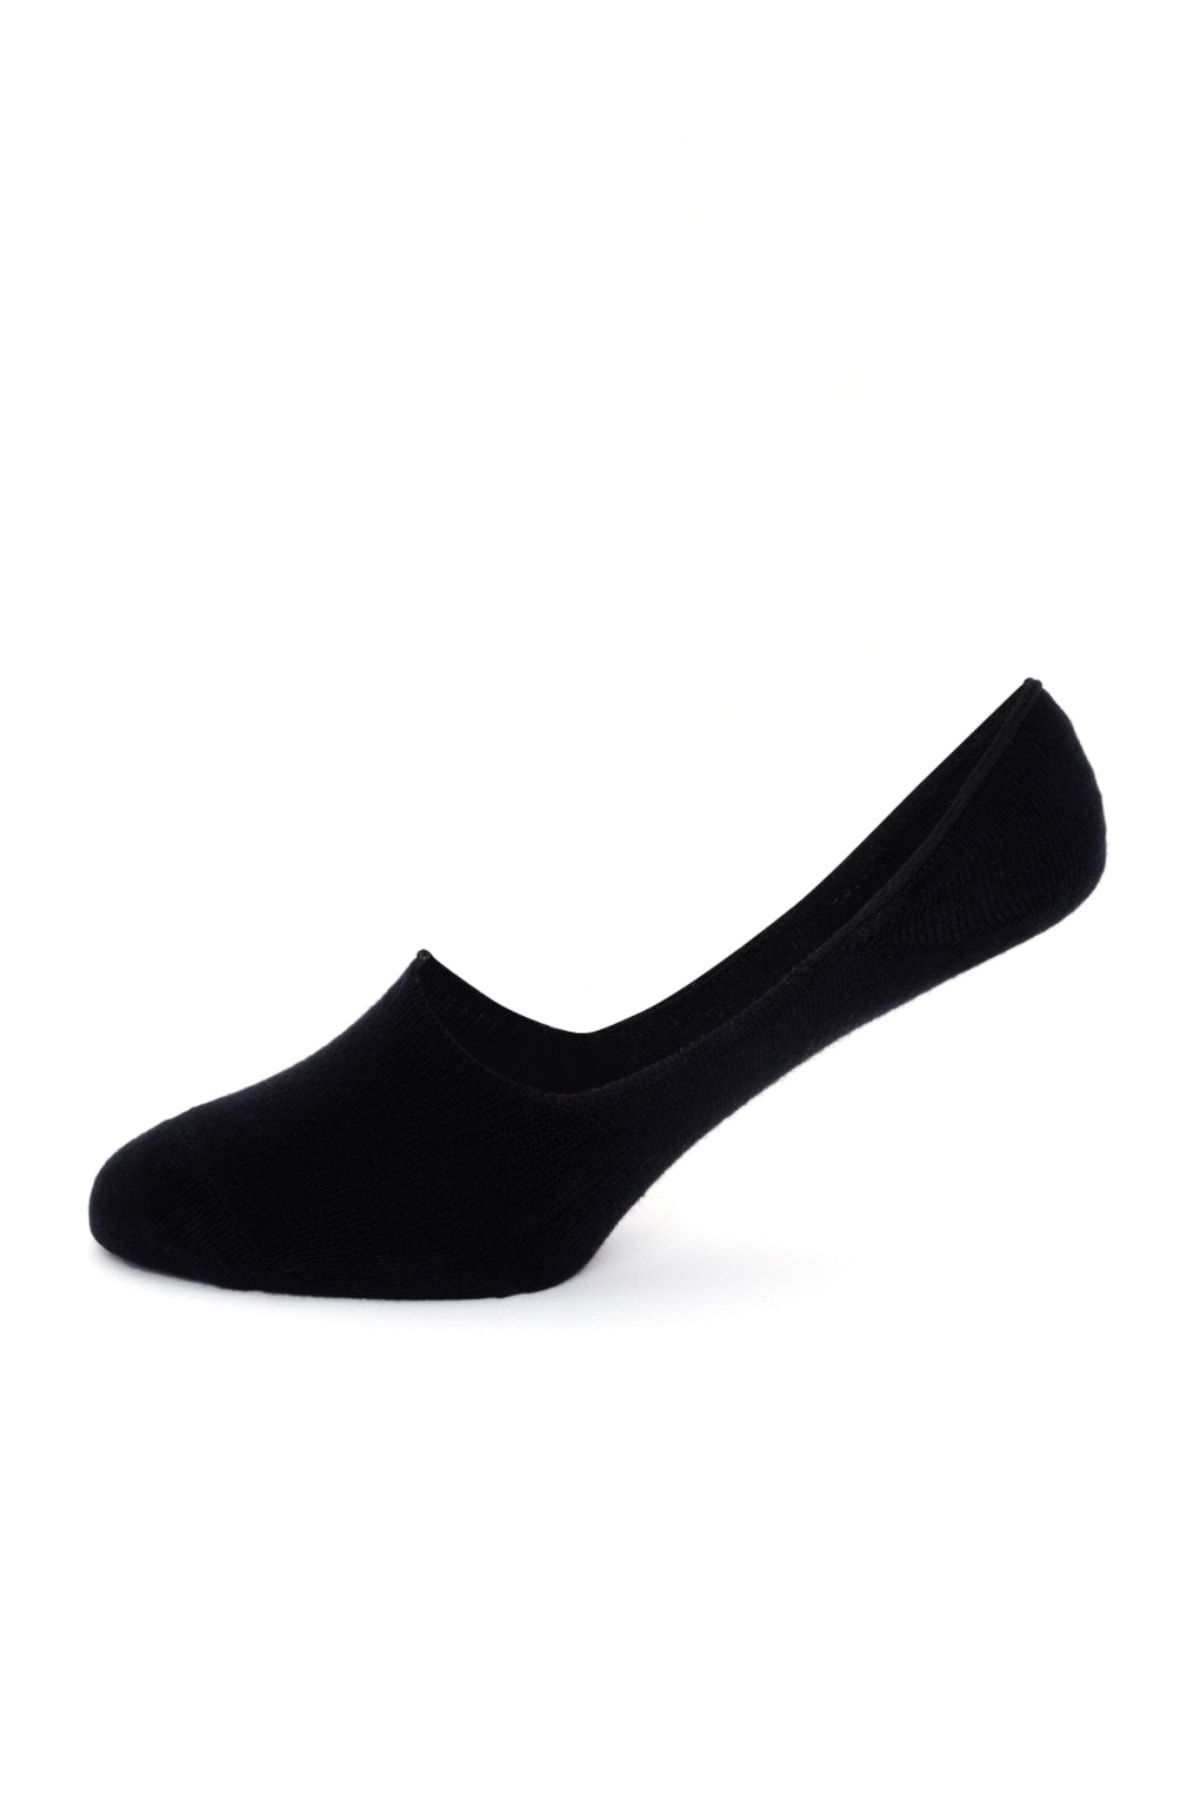 Pierre Cardin کفش های مسطح 2 تکه سیاه زن